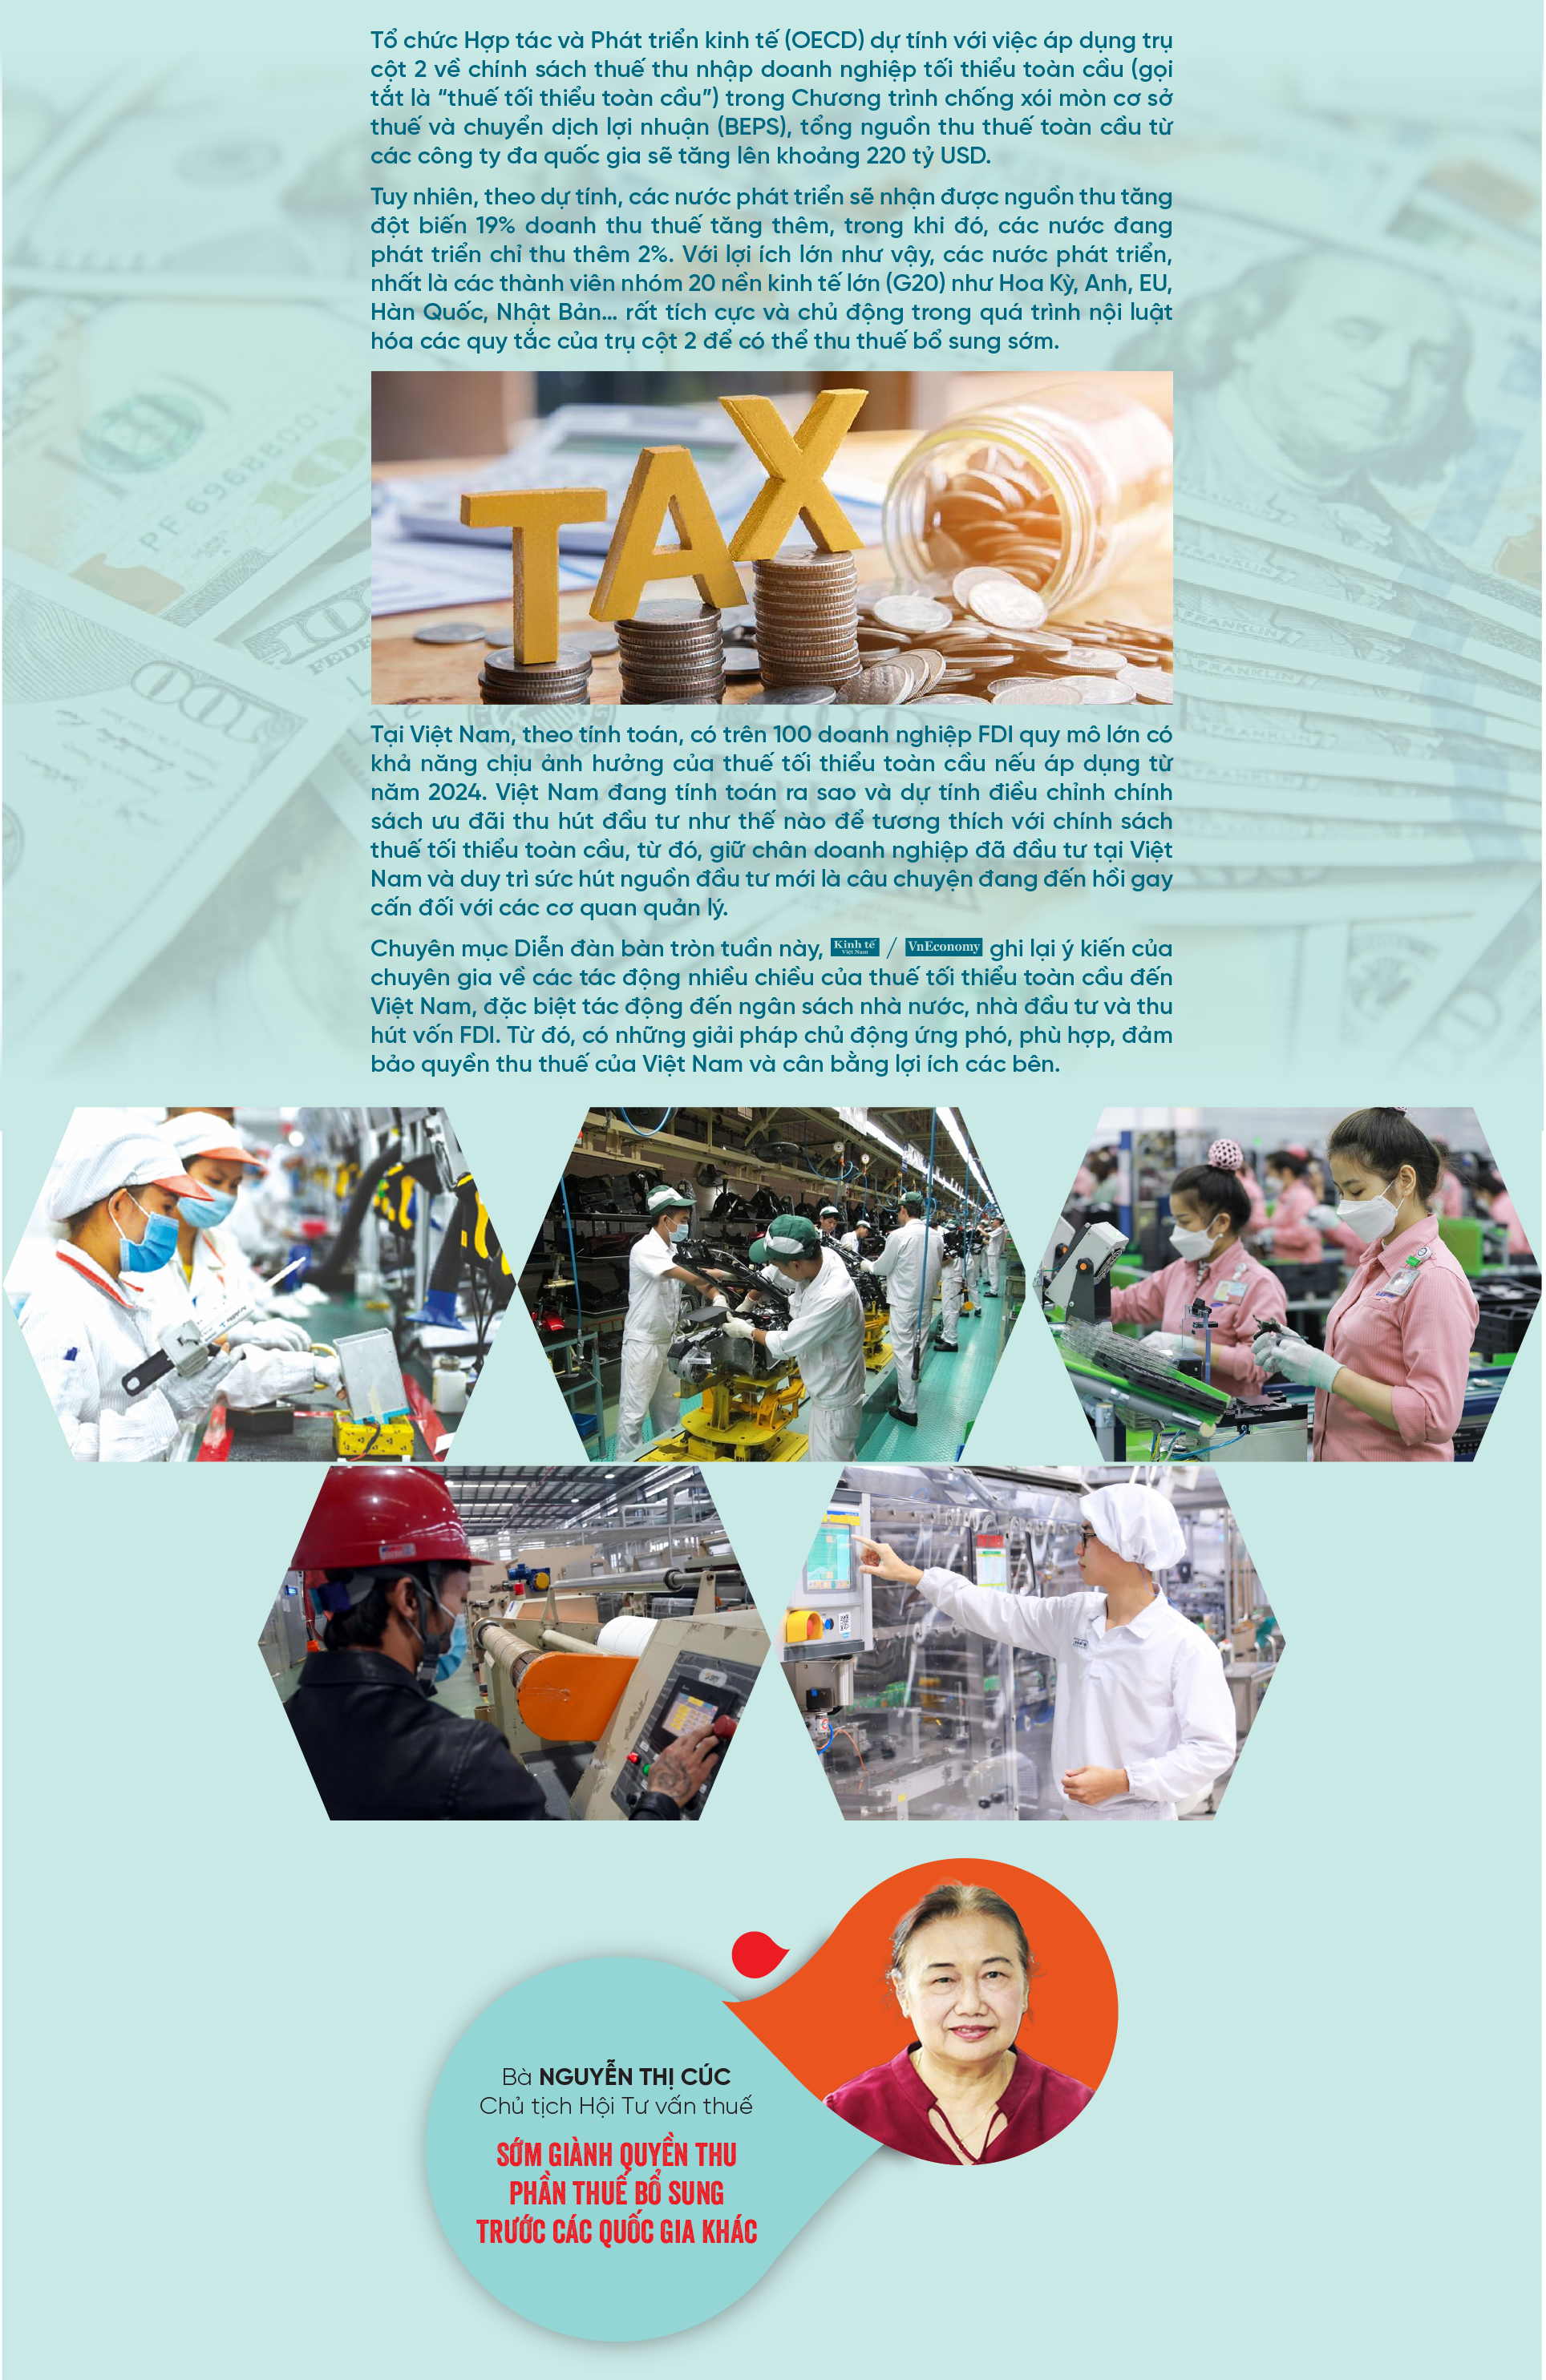 Cân bằng lợi ích và tôn trọng luật chơi thuế tối thiểu toàn cầu  - Ảnh 2